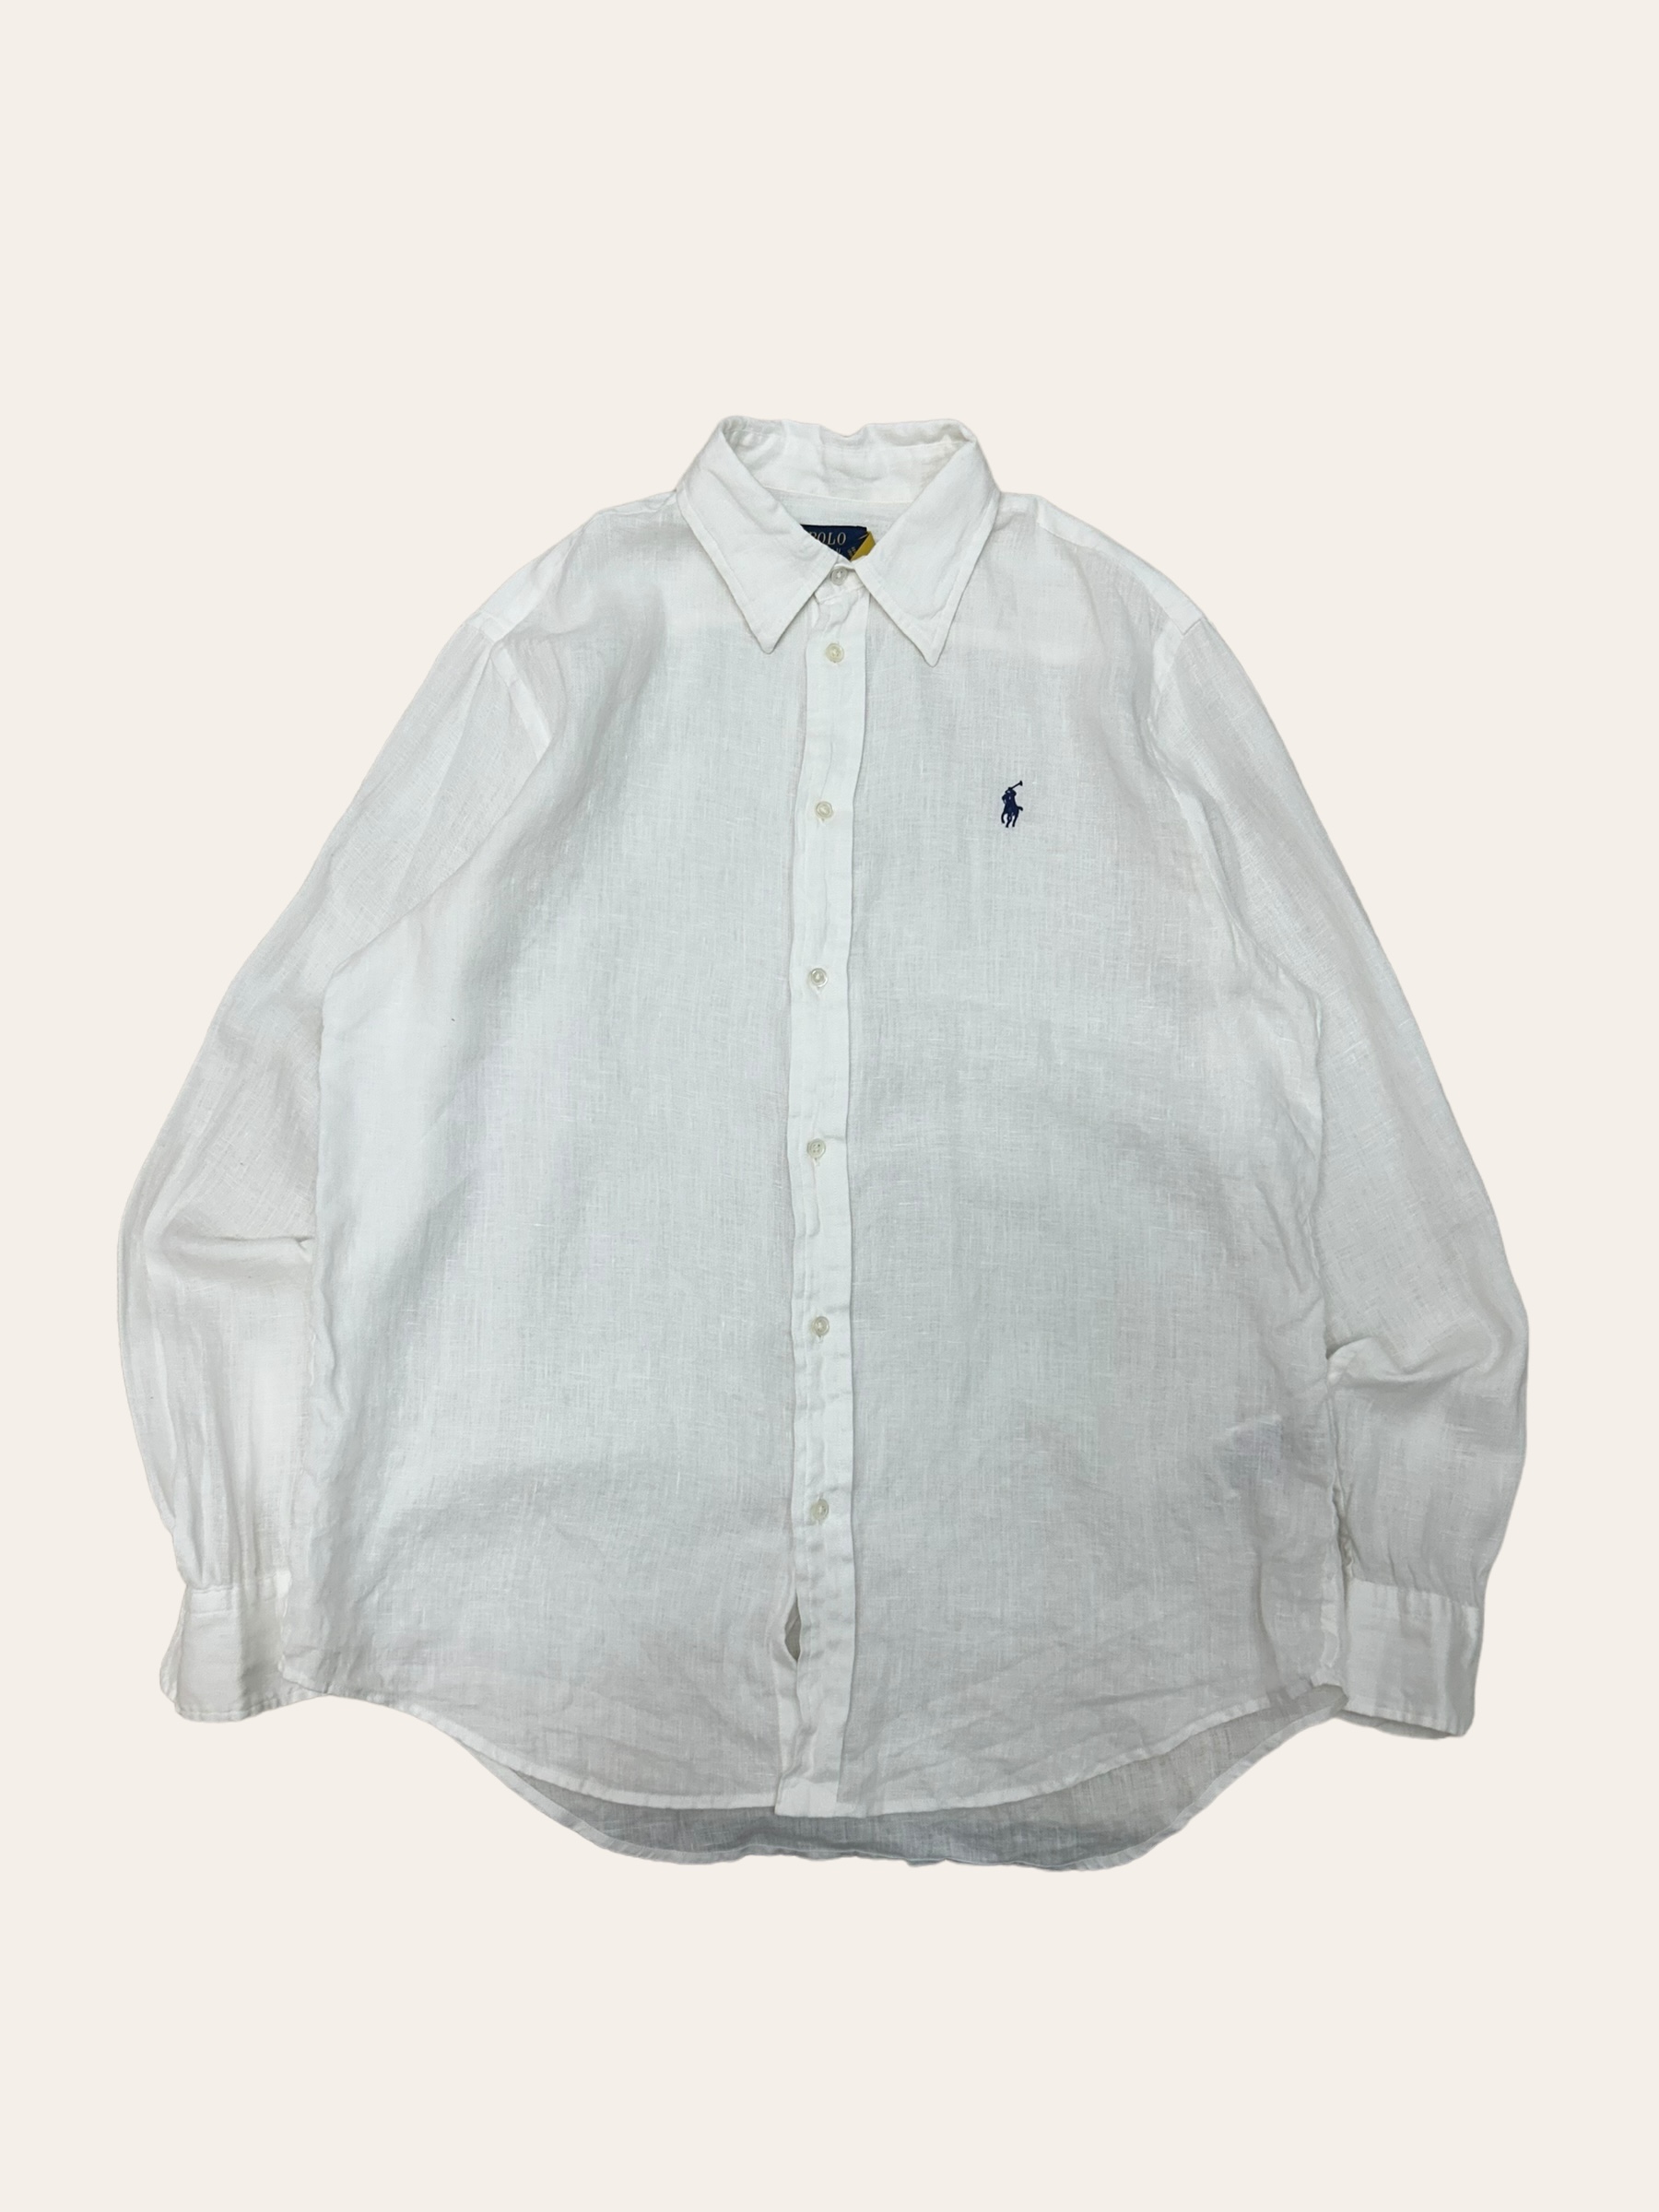 (여성용)Polo ralph lauren white linen shirt M